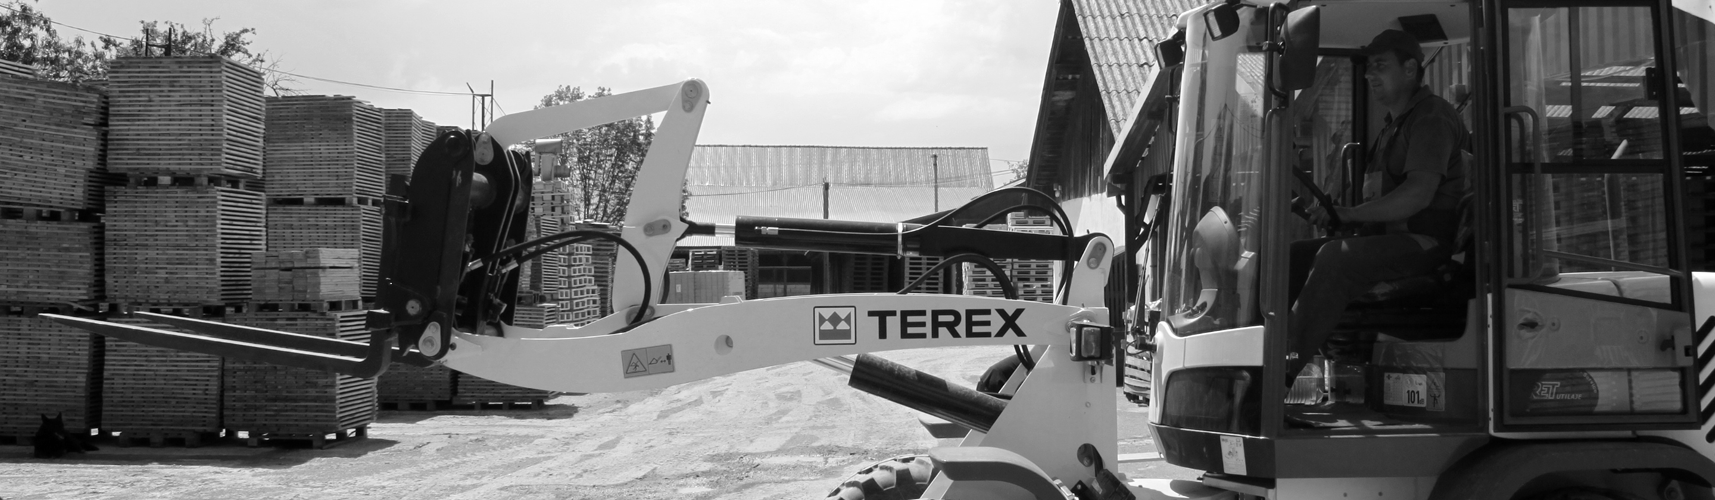 Terex-machinery